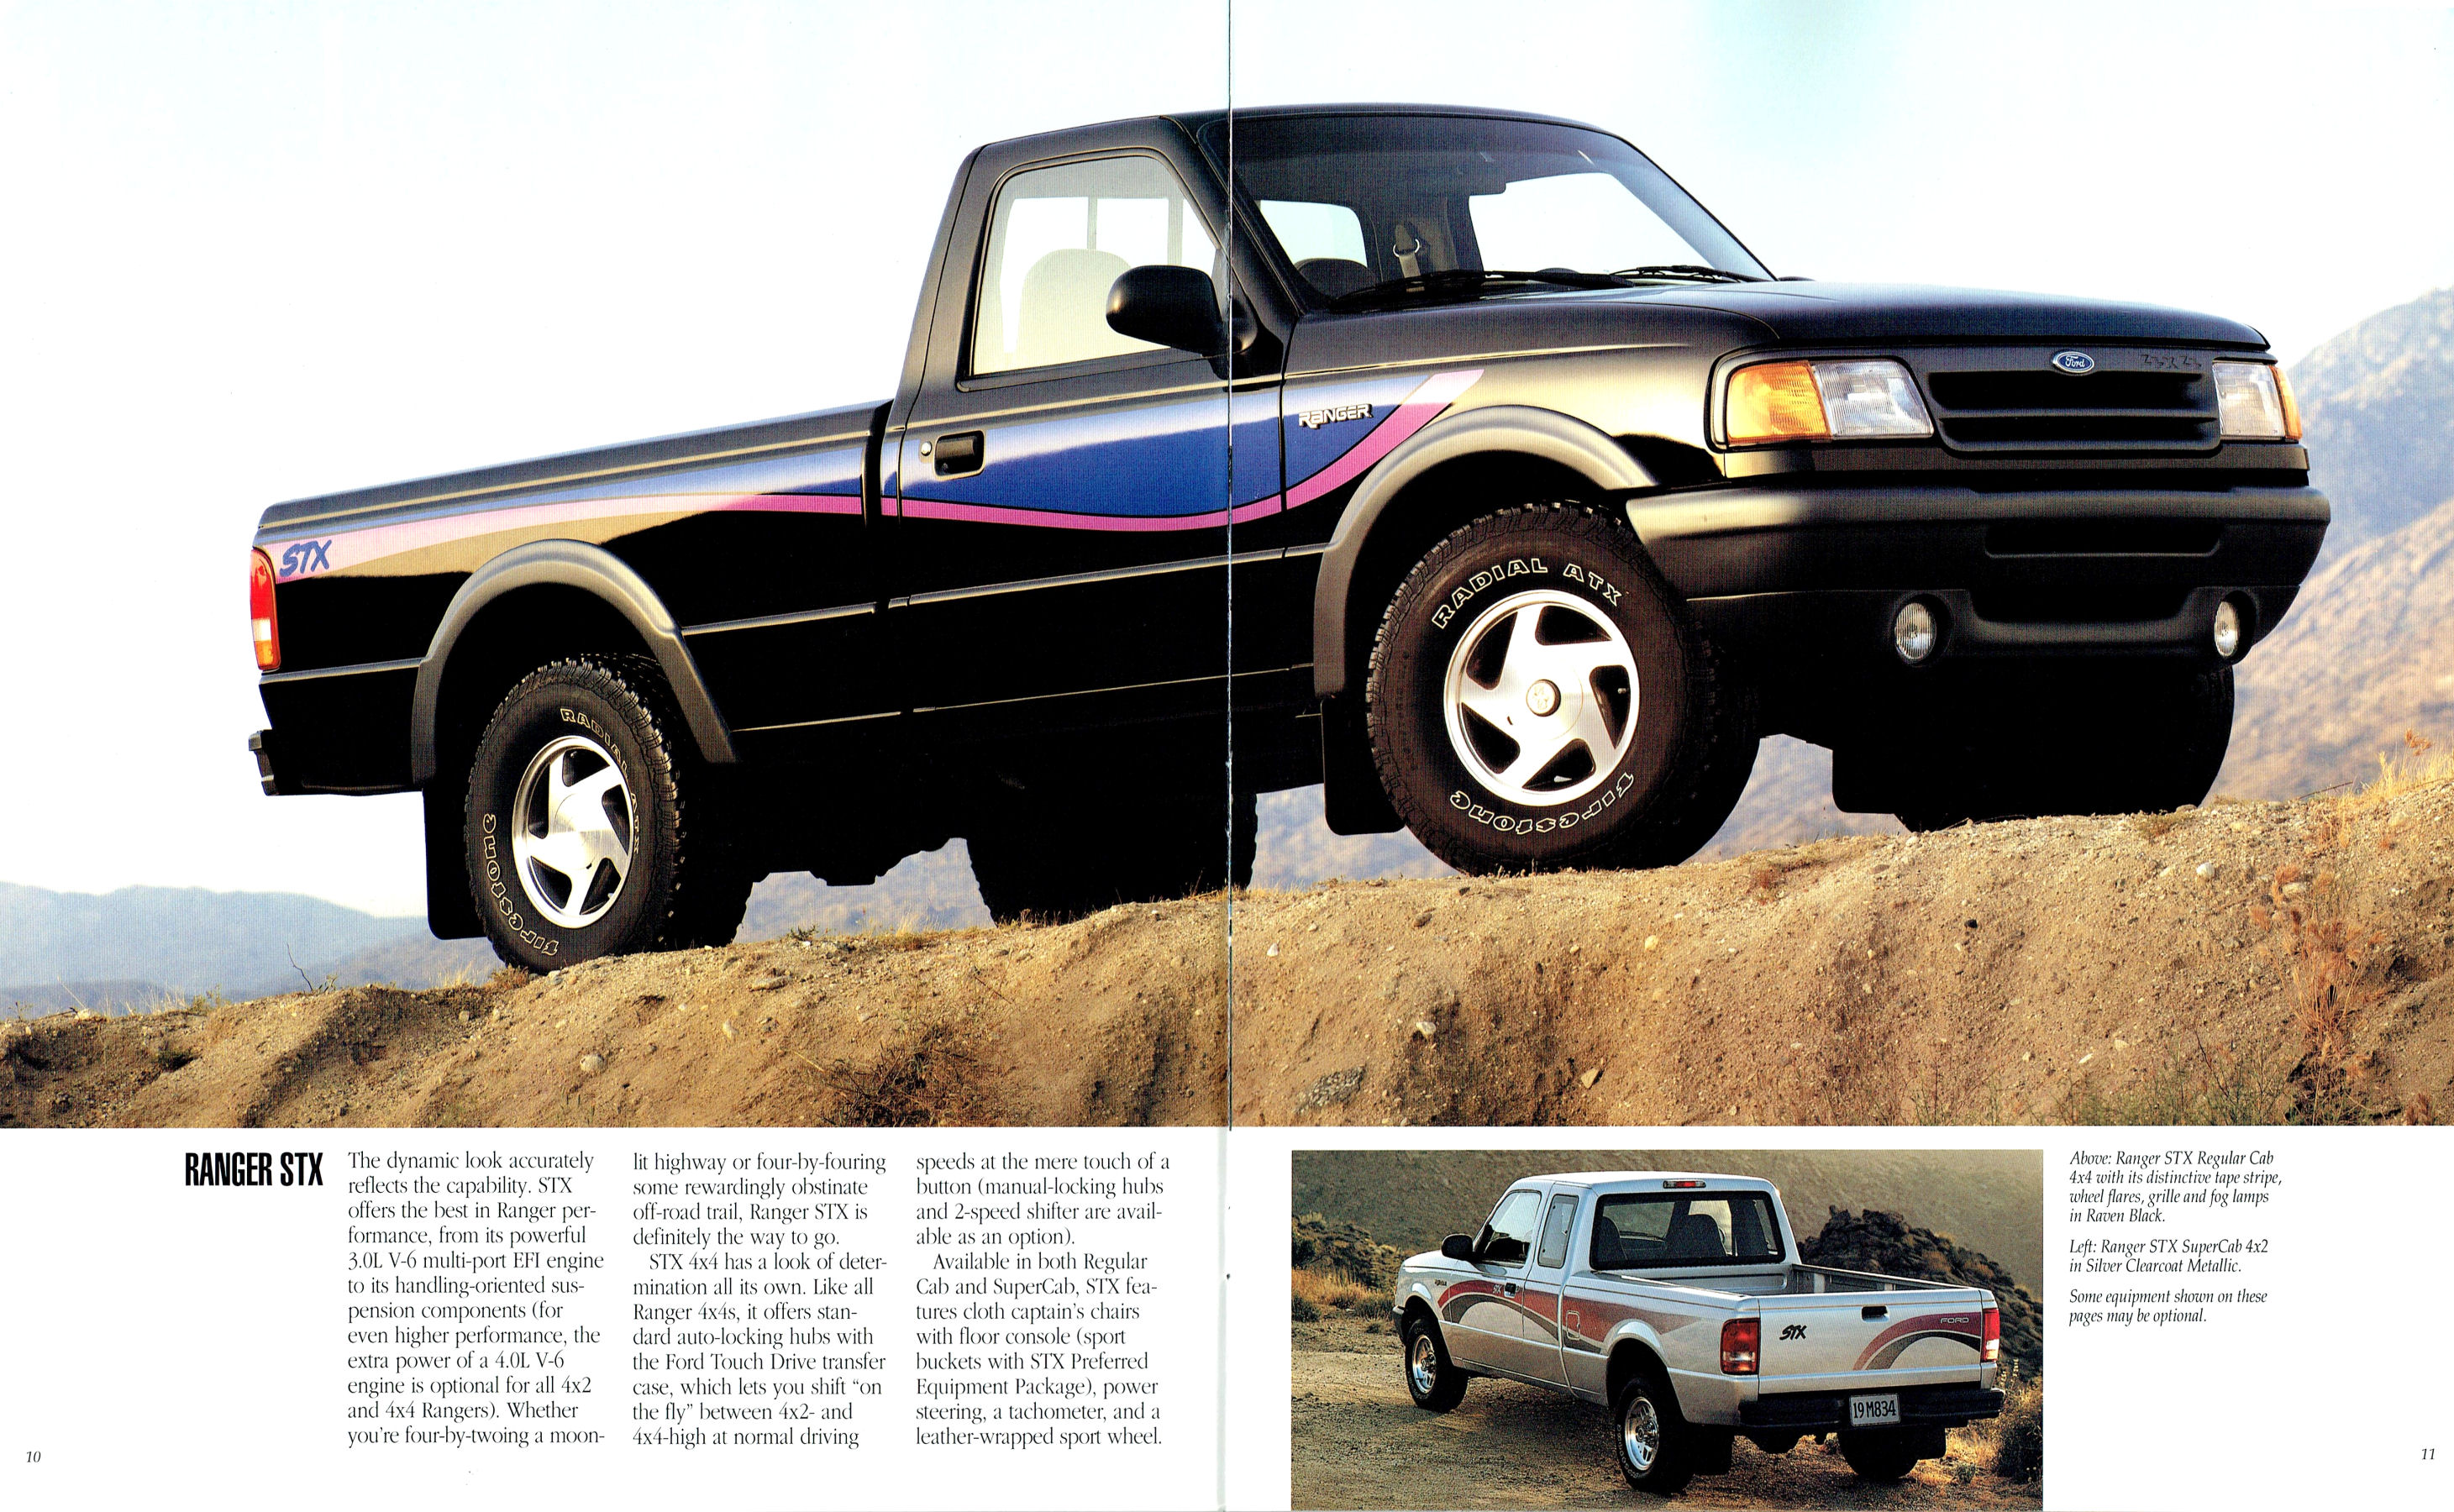 1994 Ford Ranger Pickup-10-11